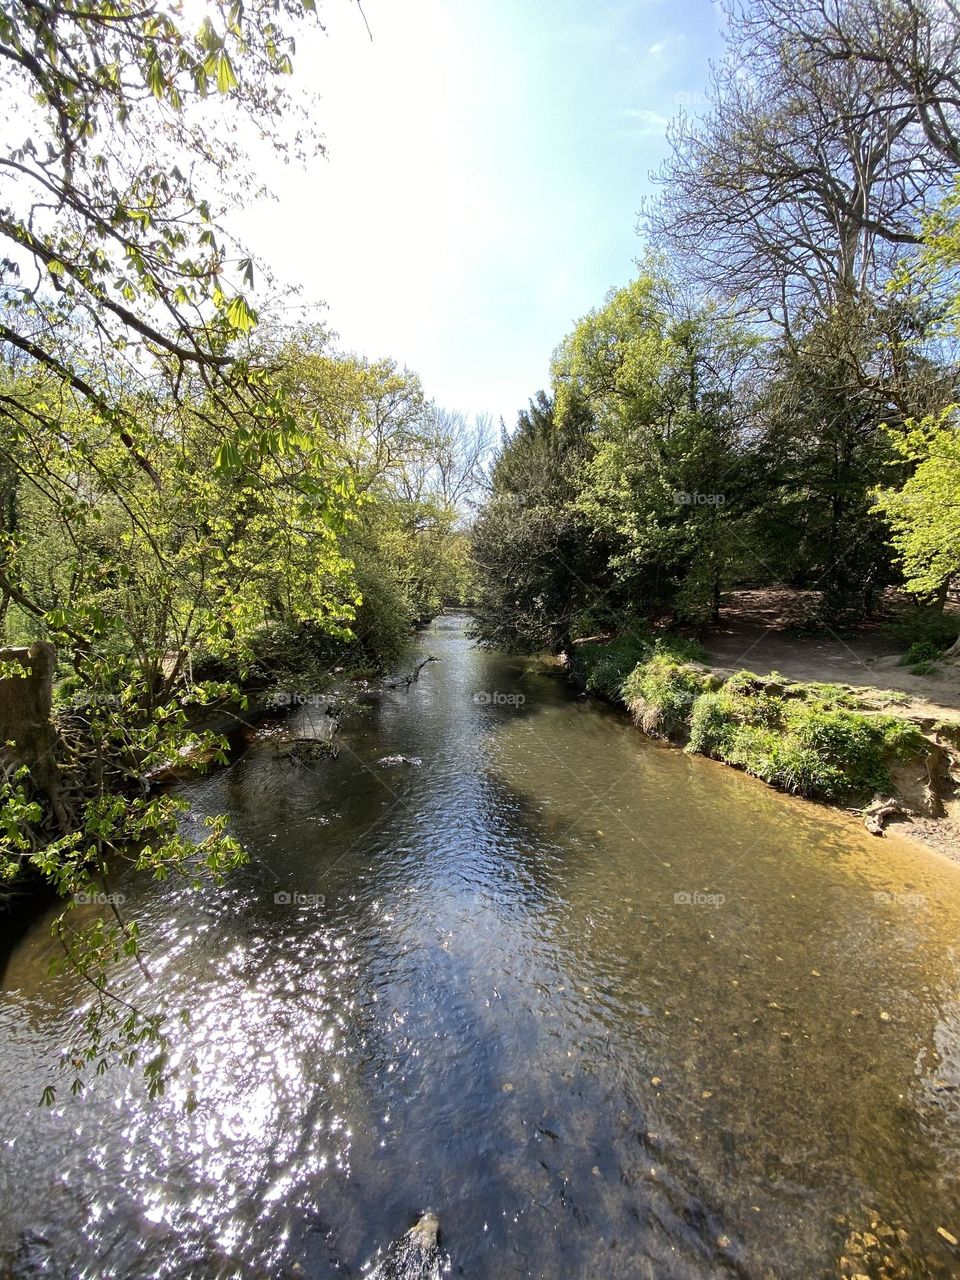 River Mole Surrey 